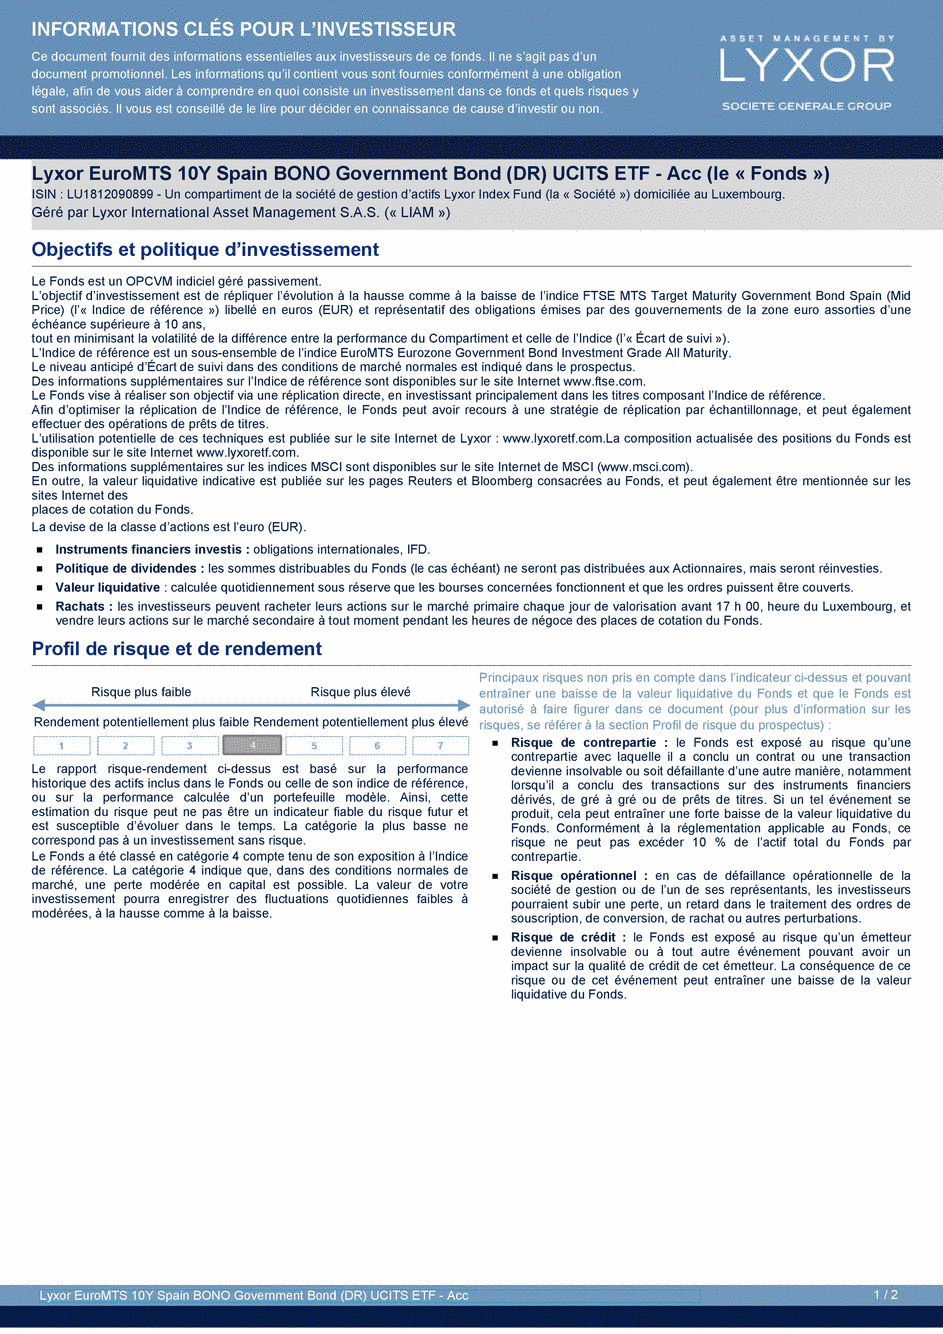 DICI Lyxor EuroMTS 10Y Spain BONO Government Bond (DR) UCITS ETF - Acc - 19/02/2021 - Français